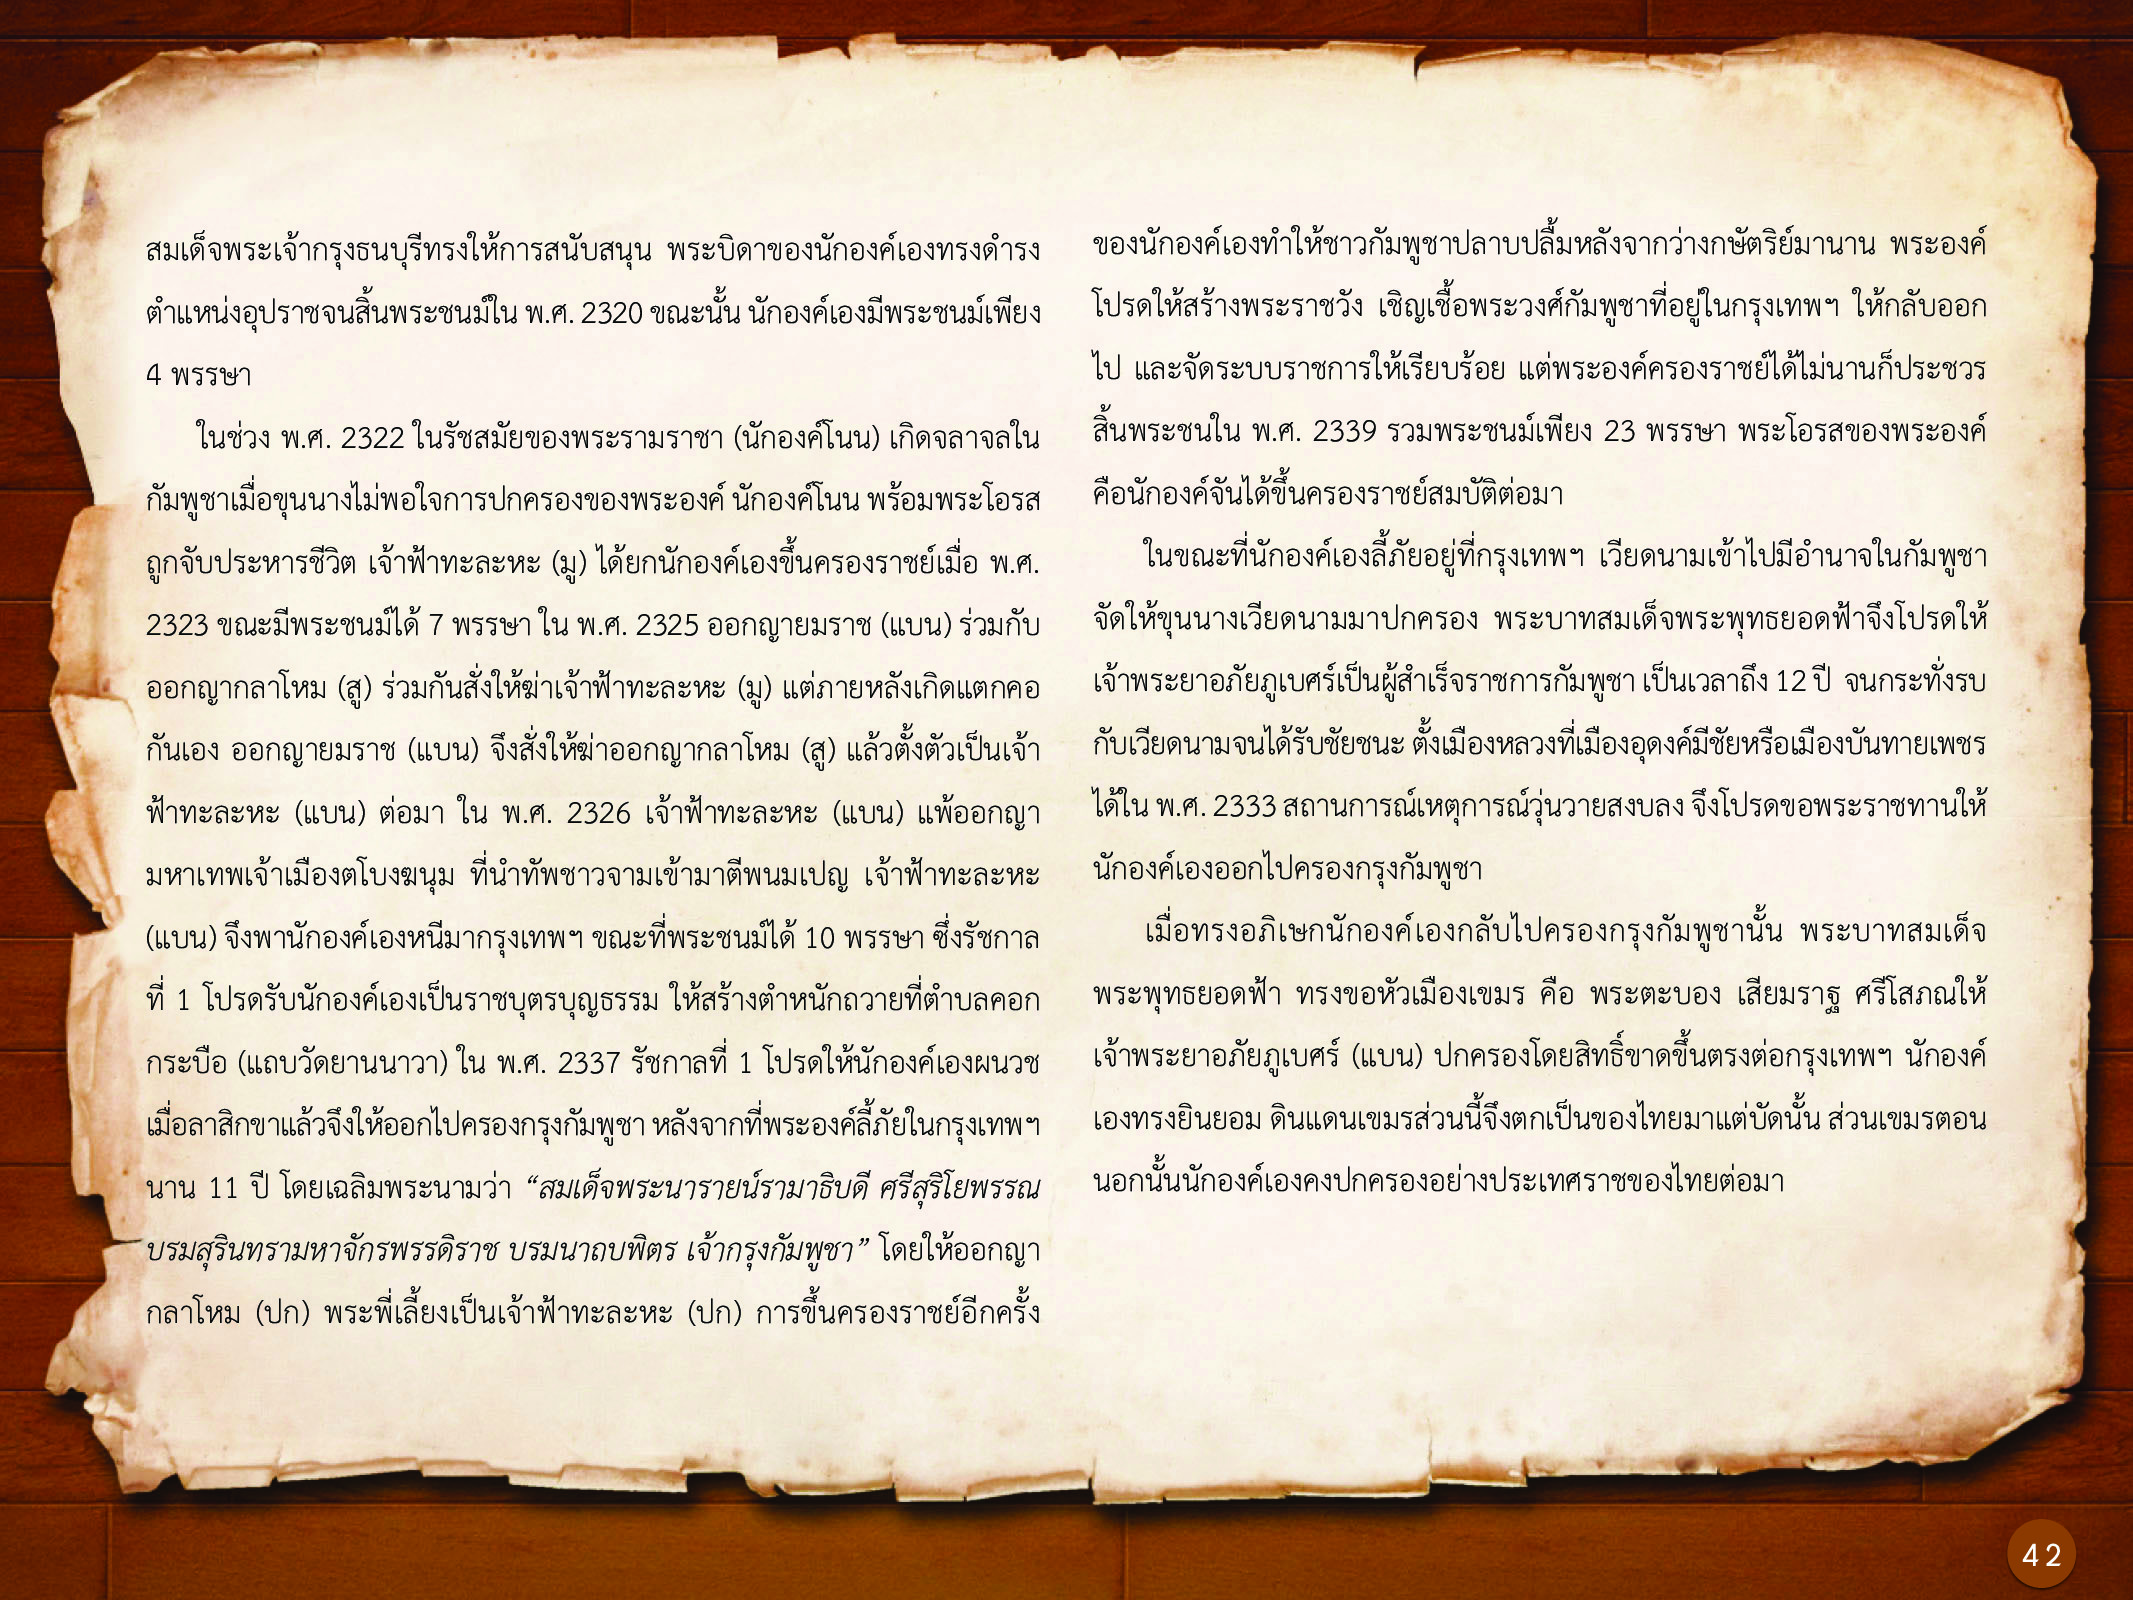 ประวัติศาสตร์กรุงธนบุรี ./images/history_dhonburi/42.jpg